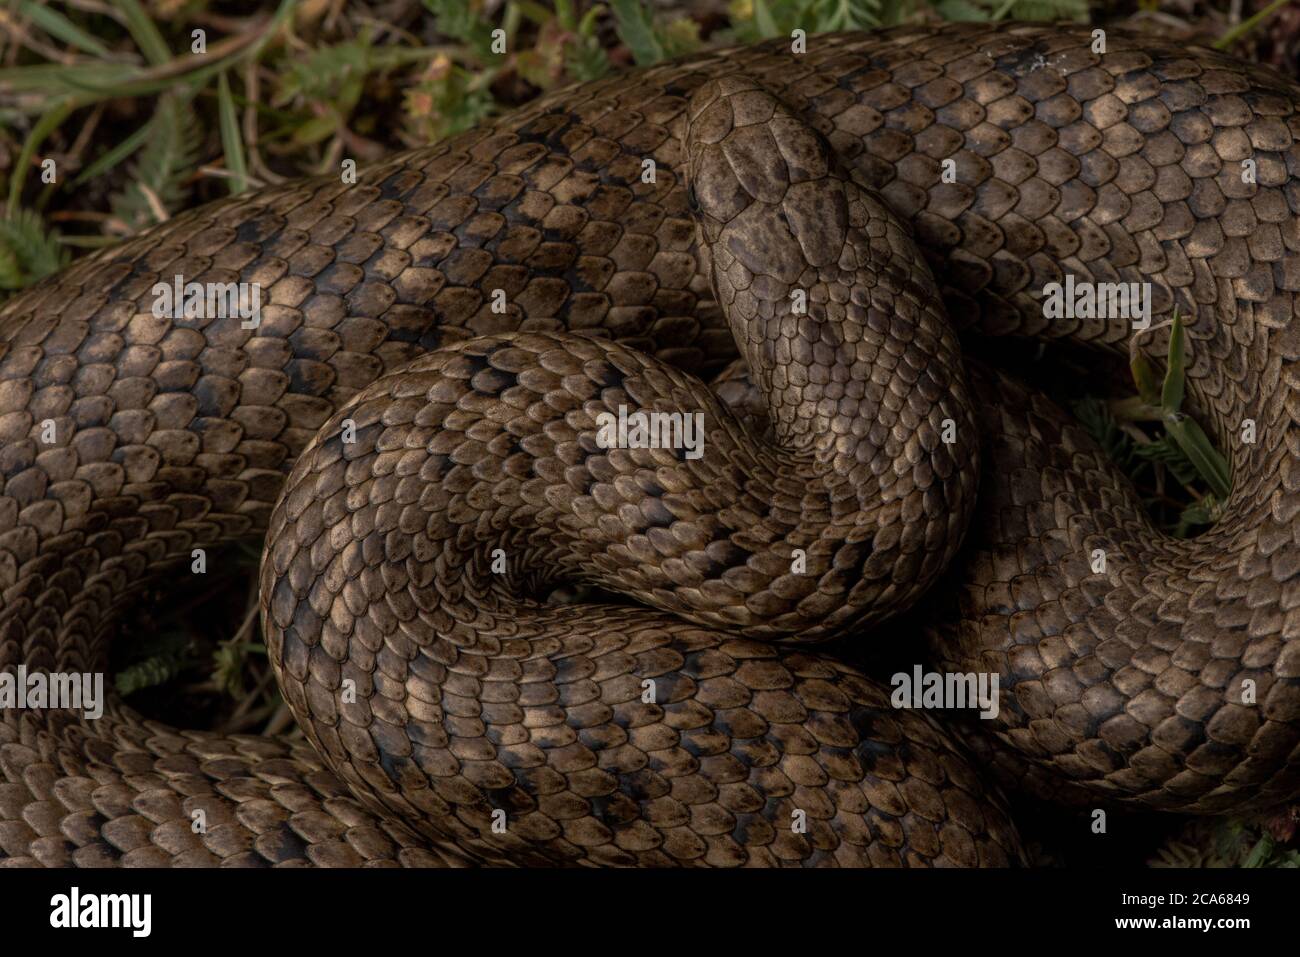 Die peruanische Schlangenschlange (Tachymenis peruviana) ist die höchstgelegene Schlangenart Amerikas. Stockfoto